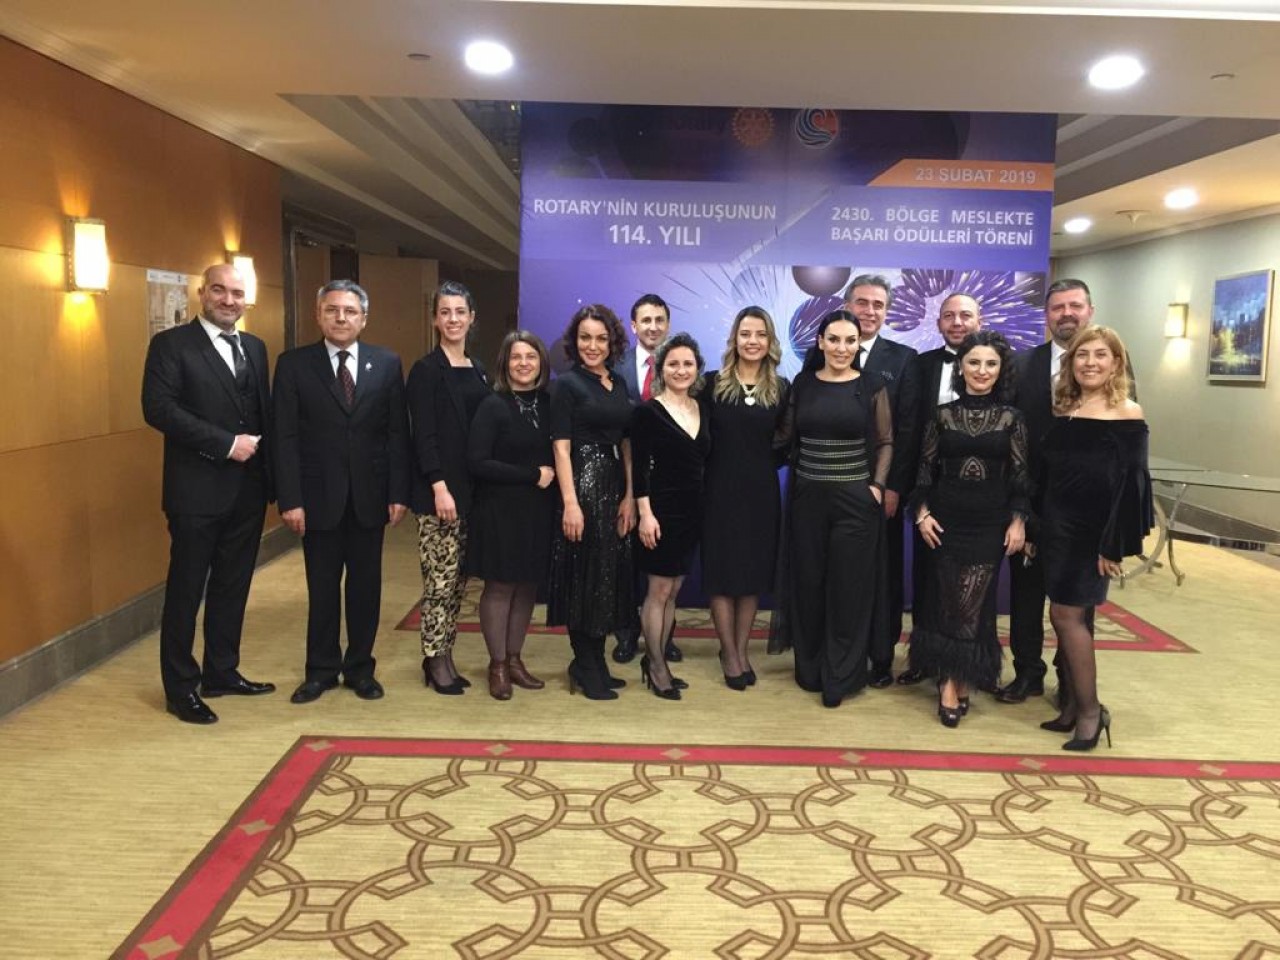 Ankara Emek Rotary Kulübü - Rotary'nin 114. Kuruluş Yıldönümü